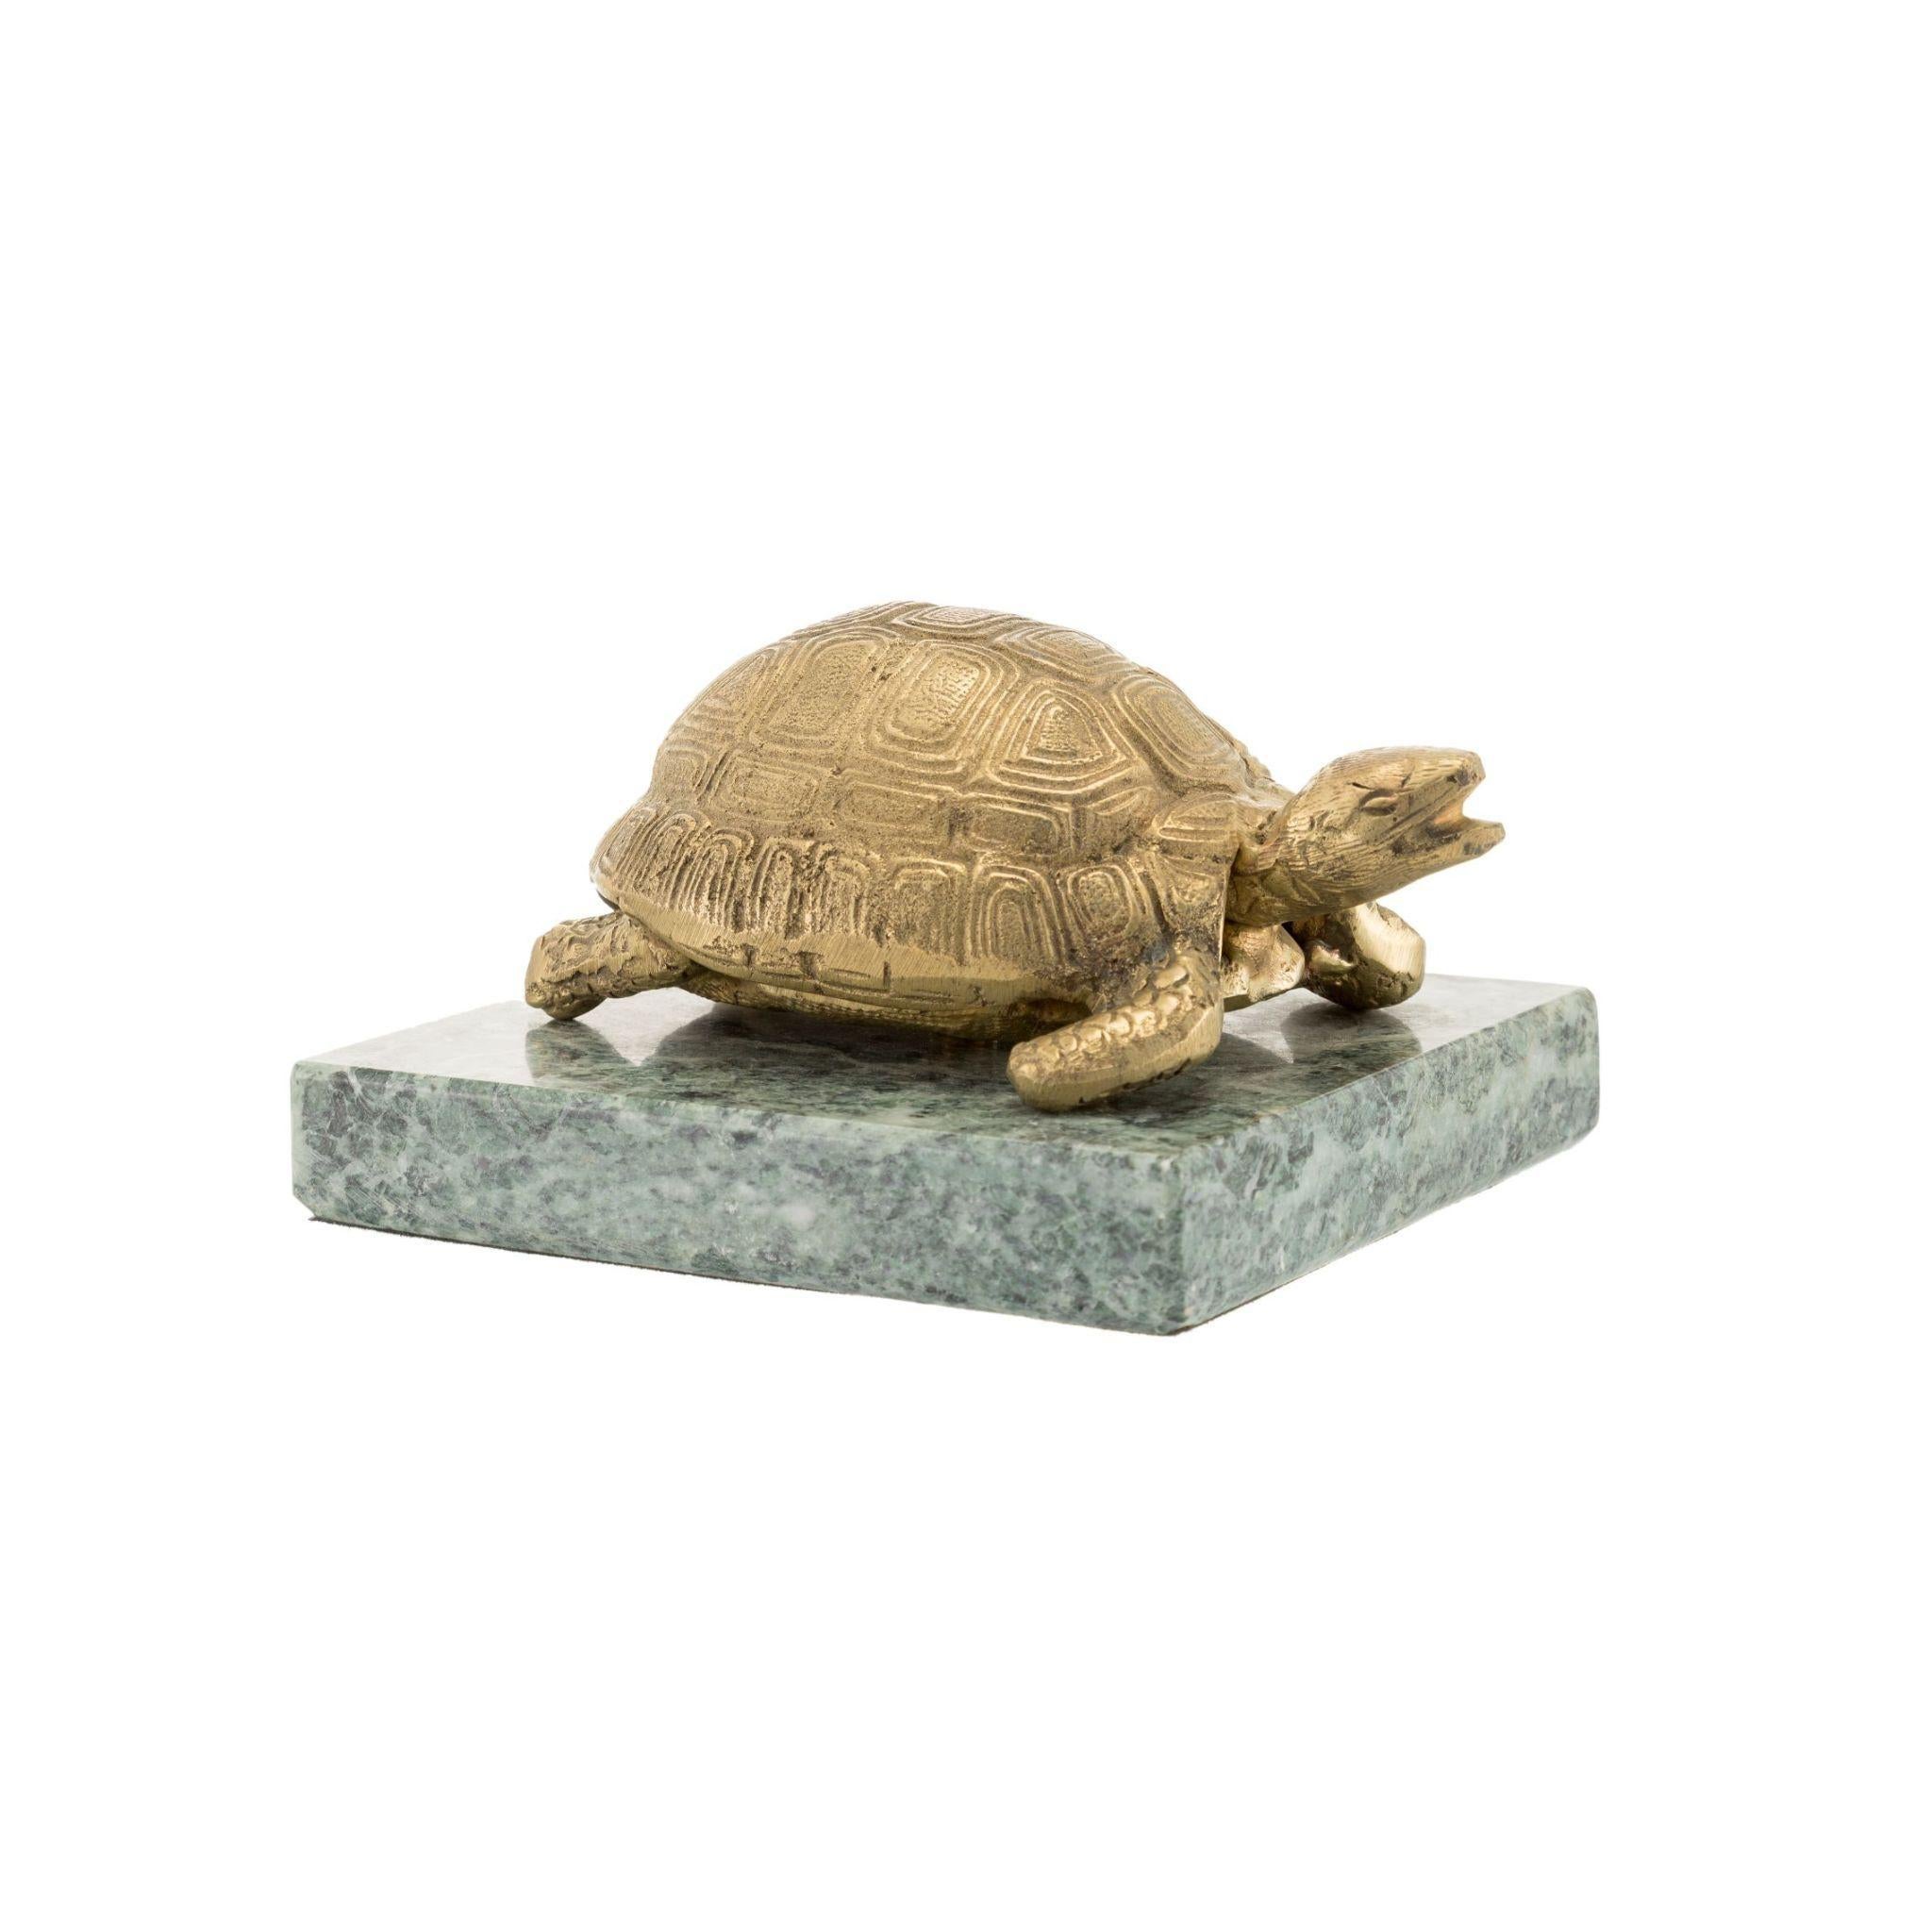 Verleihen Sie Ihrer Einrichtung einen Hauch von Eleganz mit unserer Schildkrötenfigur aus Messing mit grünem Marmorsockel. Die aus hochwertigem Messing gefertigte Figur mit dem schönen grünen Marmorsockel ist der perfekte Dekorationsgegenstand für